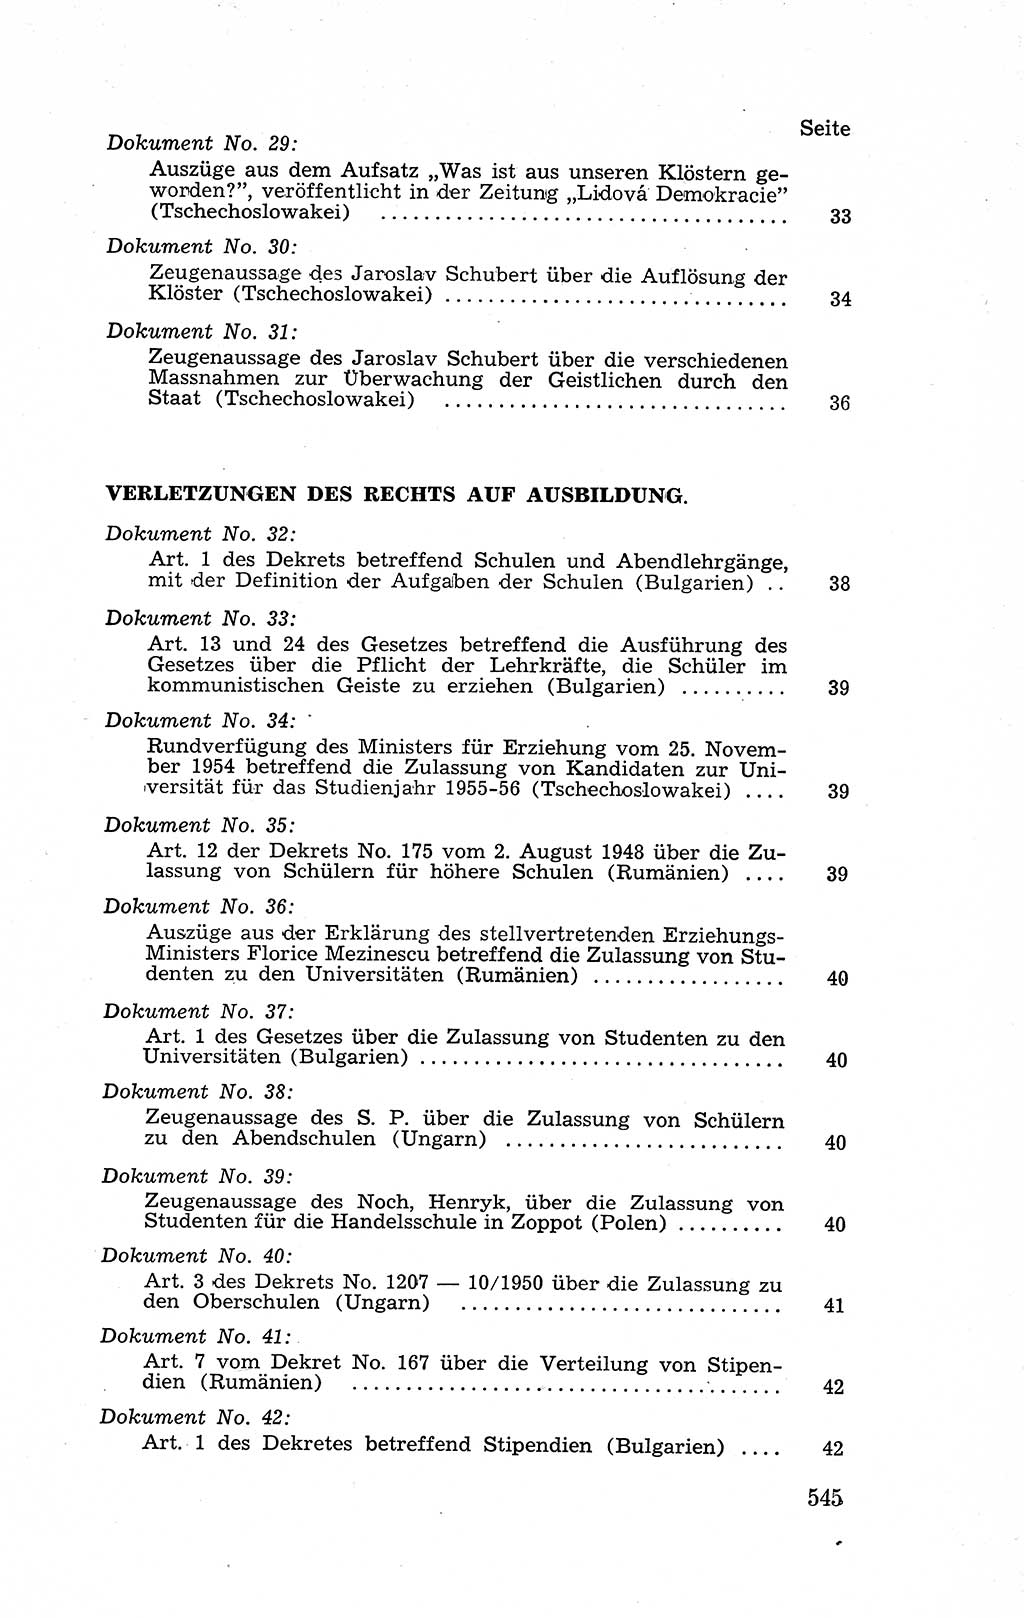 Recht in Fesseln, Dokumente, Internationale Juristen-Kommission [Bundesrepublik Deutschland (BRD)] 1955, Seite 545 (R. Dok. IJK BRD 1955, S. 545)